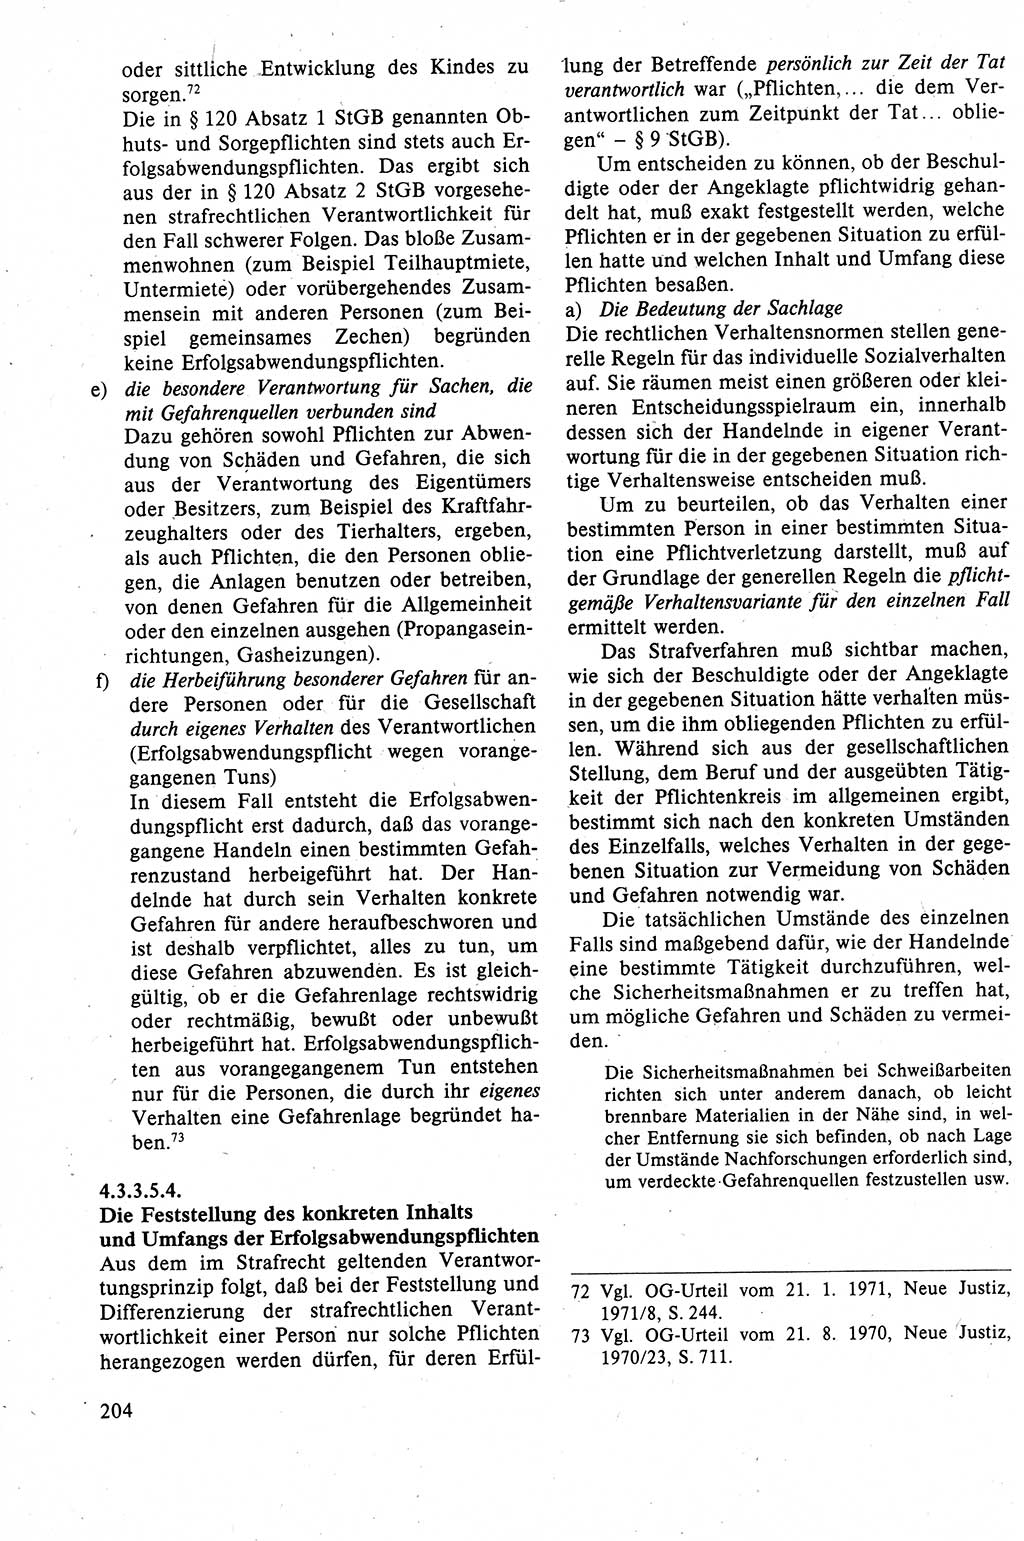 Strafrecht der DDR (Deutsche Demokratische Republik), Lehrbuch 1988, Seite 204 (Strafr. DDR Lb. 1988, S. 204)